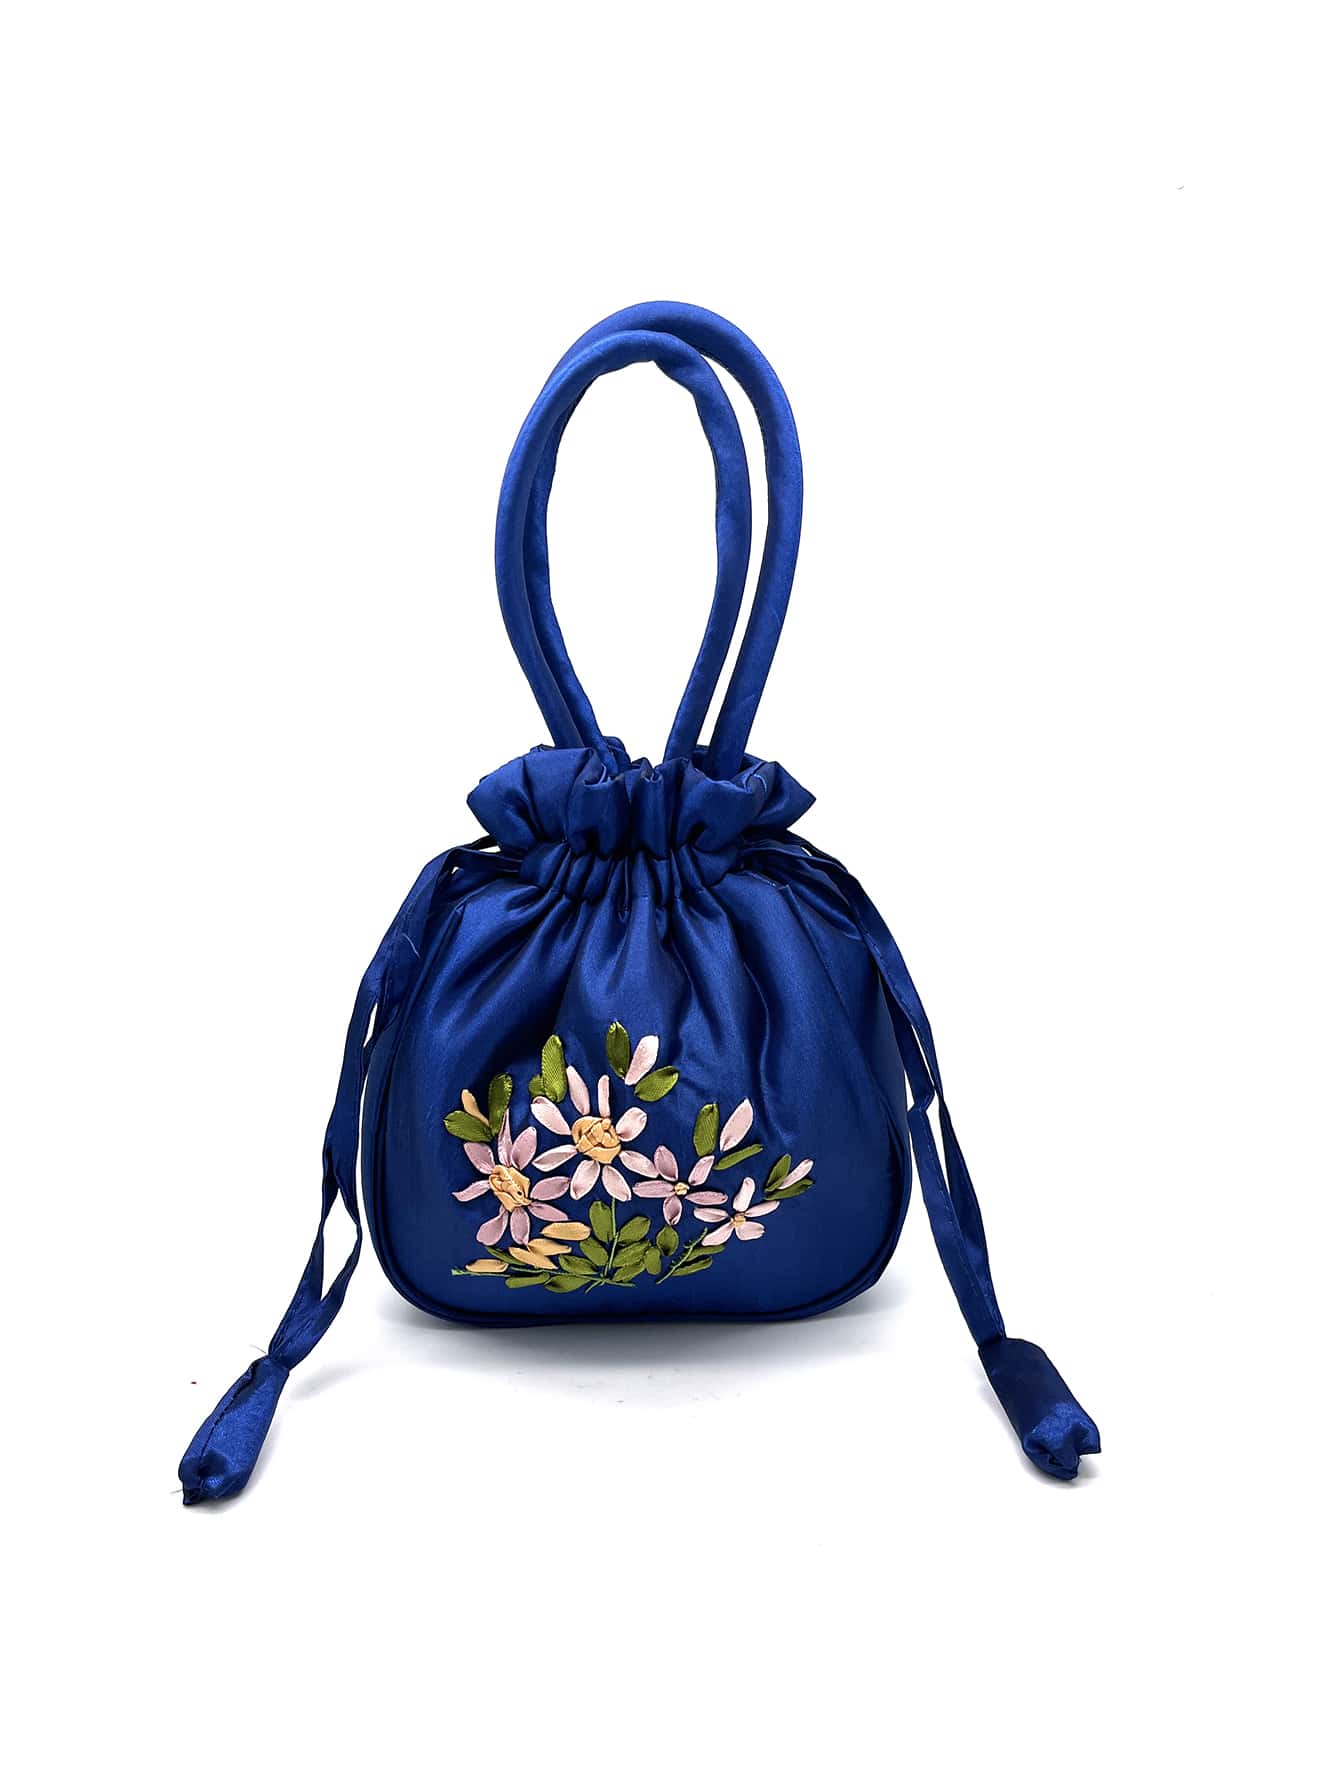 Мини-элегантная сумка-ведро с цветочной вышивкой на шнурке, королевский синий